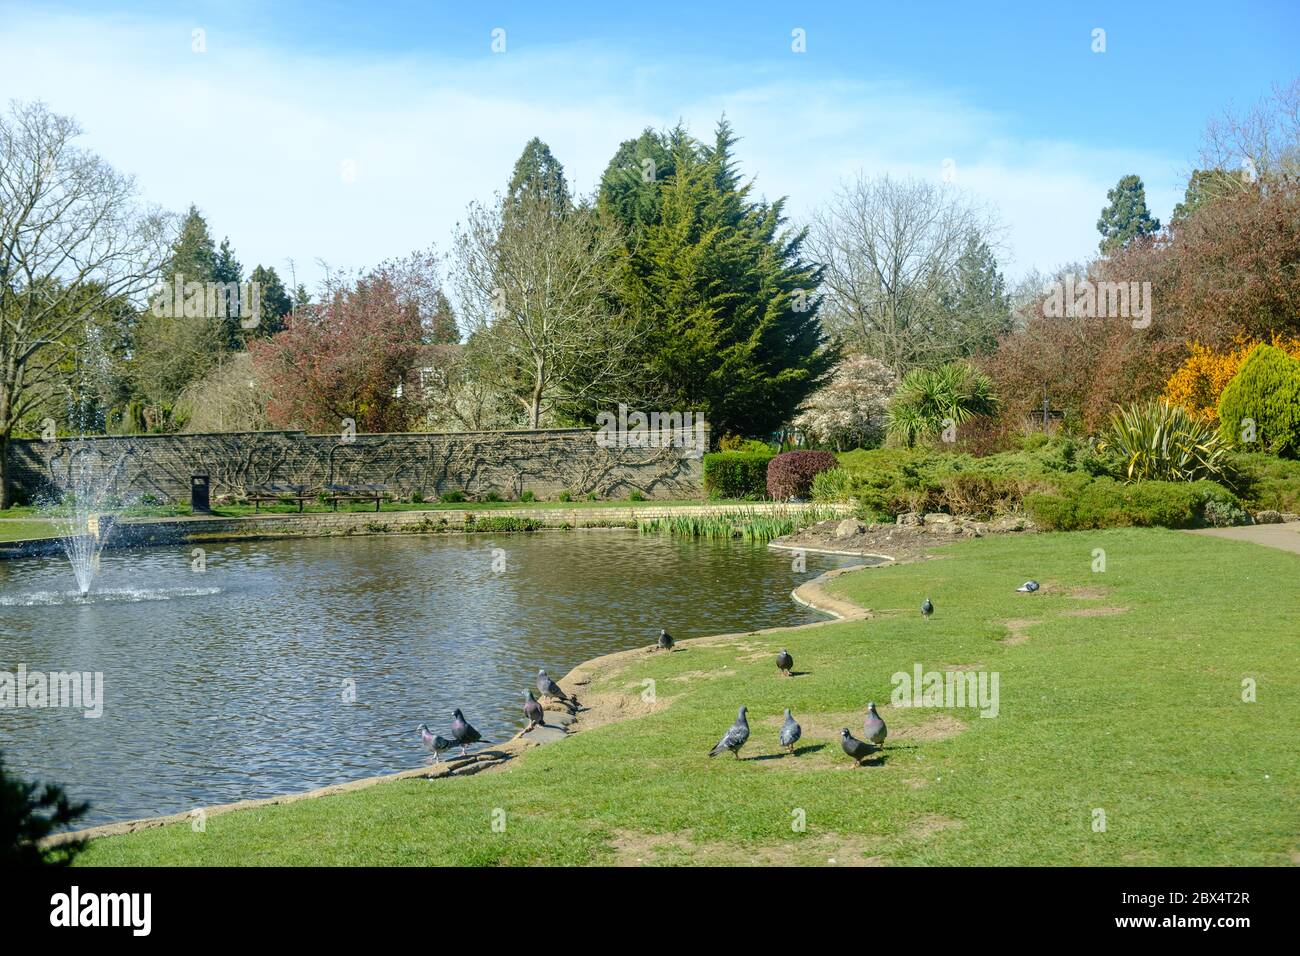 Piccioni sull'erba al lago con una fontana d'acqua. Alberi assortiti, muro con vite e fogliame splendidamente paesaggistico. Pinner Memorial Park, Londra. Foto Stock